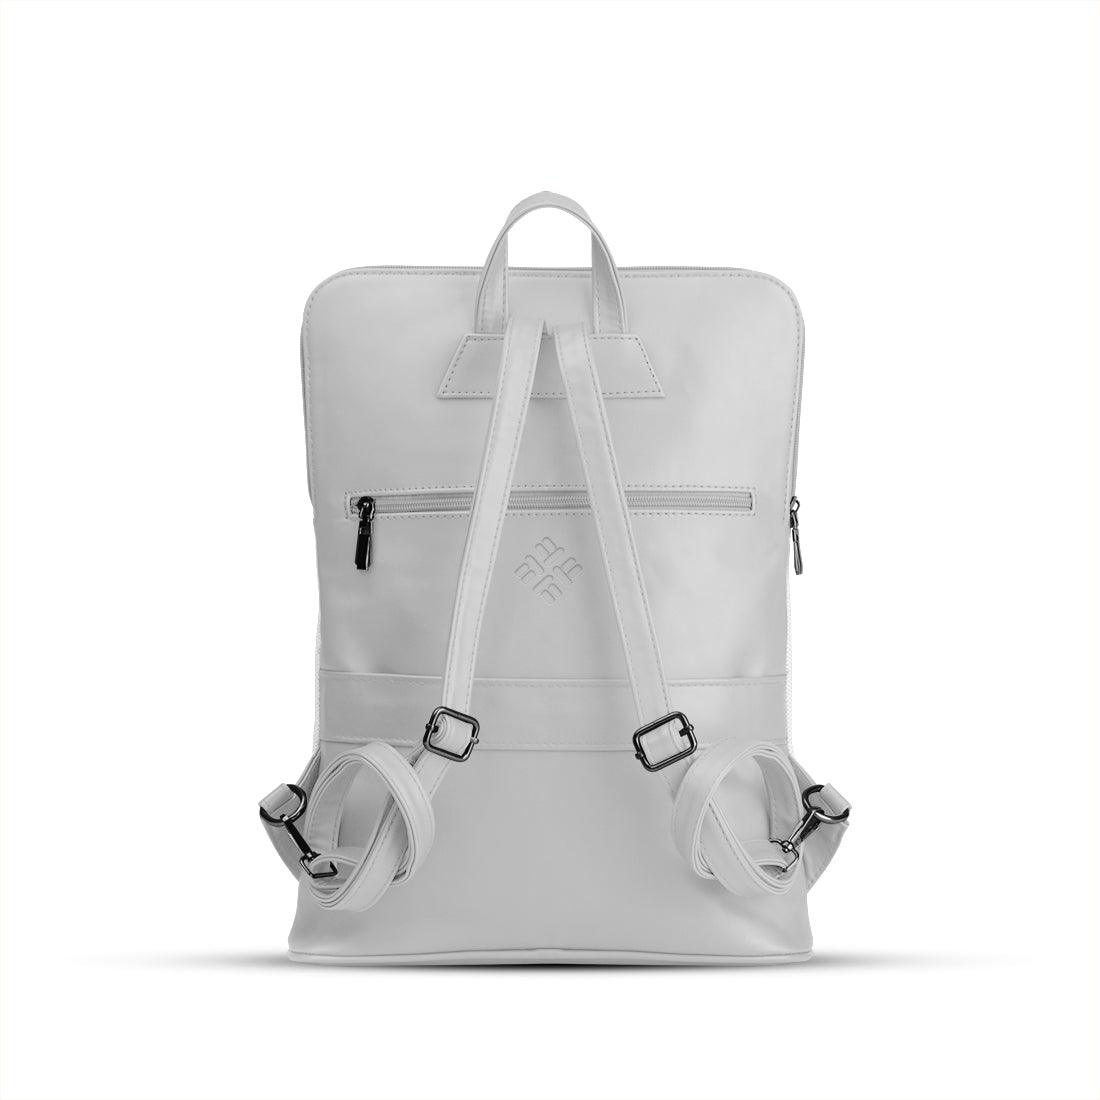 White Orbit Laptop Backpack Hamster - CANVAEGYPT